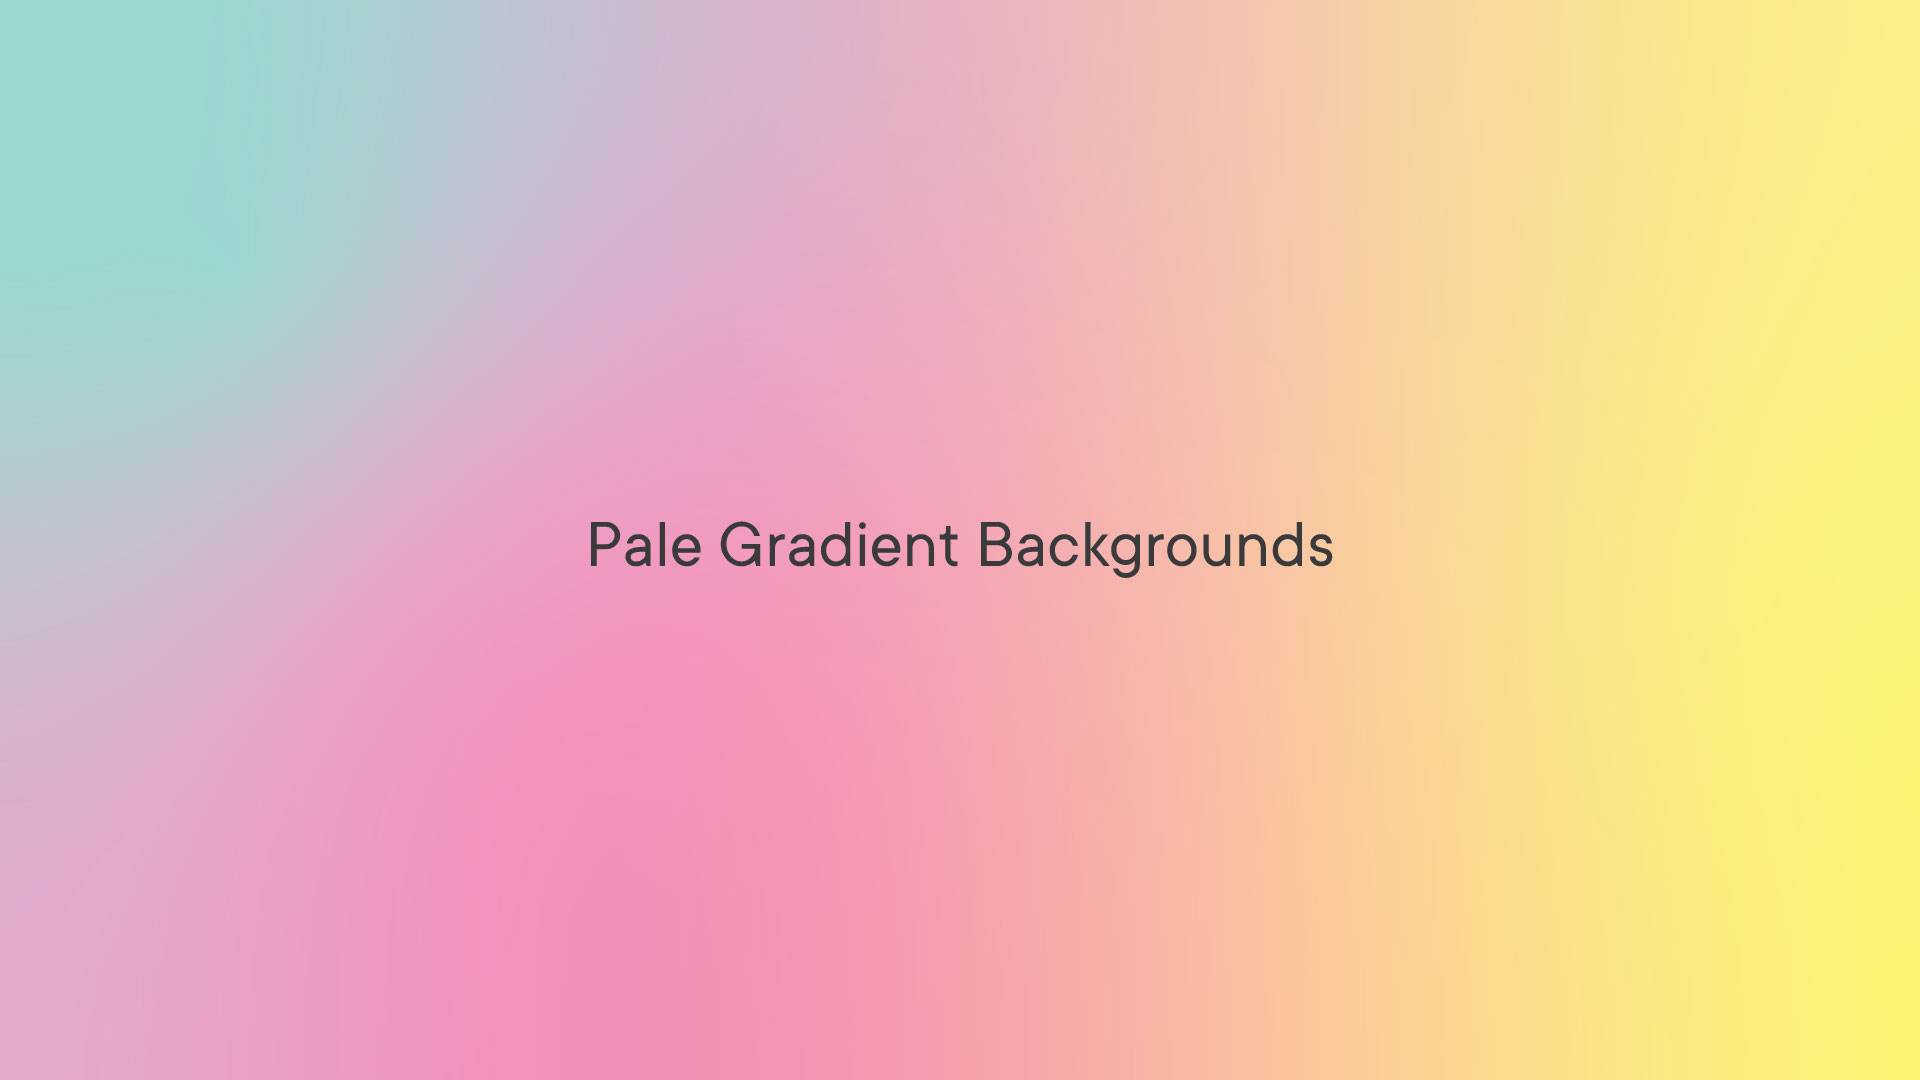 Pale Gradient Vector: Với thị hiếu tinh tế và khả năng phối màu đáng kinh ngạc, Pale Gradient Vector sẽ không làm bạn thất vọng. Tự hào được sở hữu bộ ảnh độc quyền, bạn giờ có thể thưởng thức trọn vẹn sự tinh tế và sự kết hợp tuyệt vời của màu sắc.